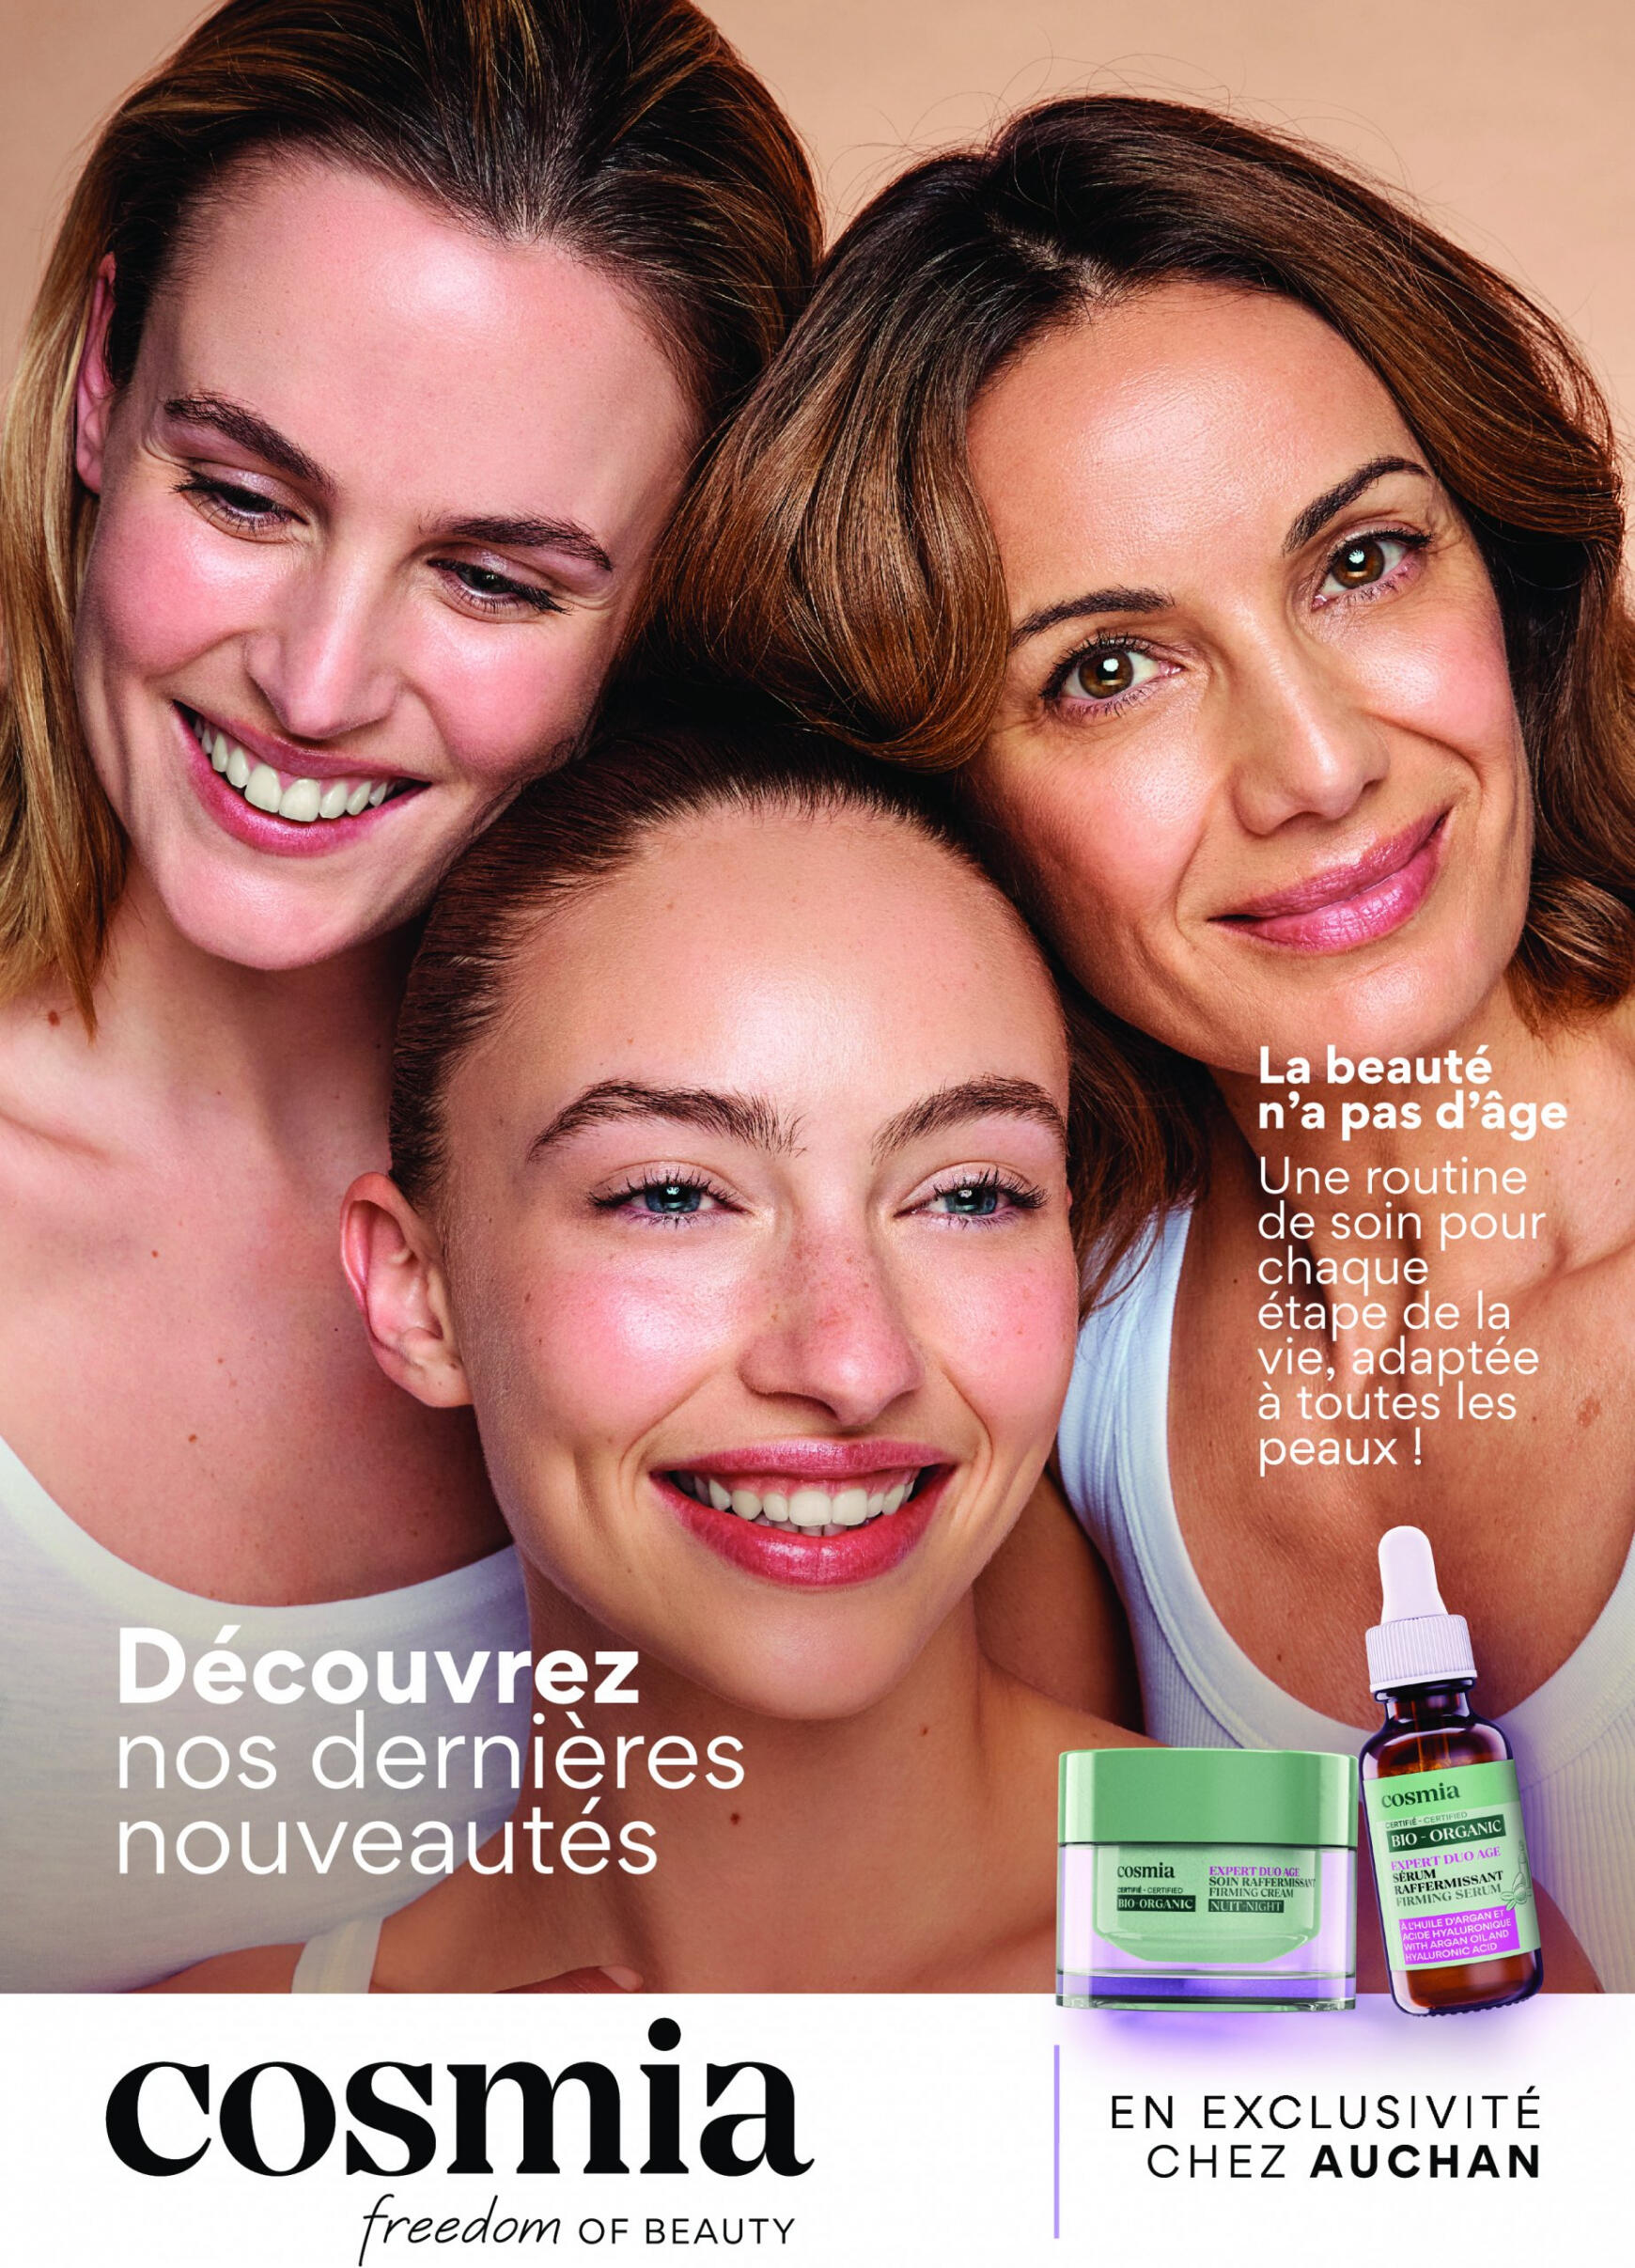 auchan - Auchan - Découvrez nos dernières nouveautés Cosmia folder huidig 27.05. - 20.06. - page: 1